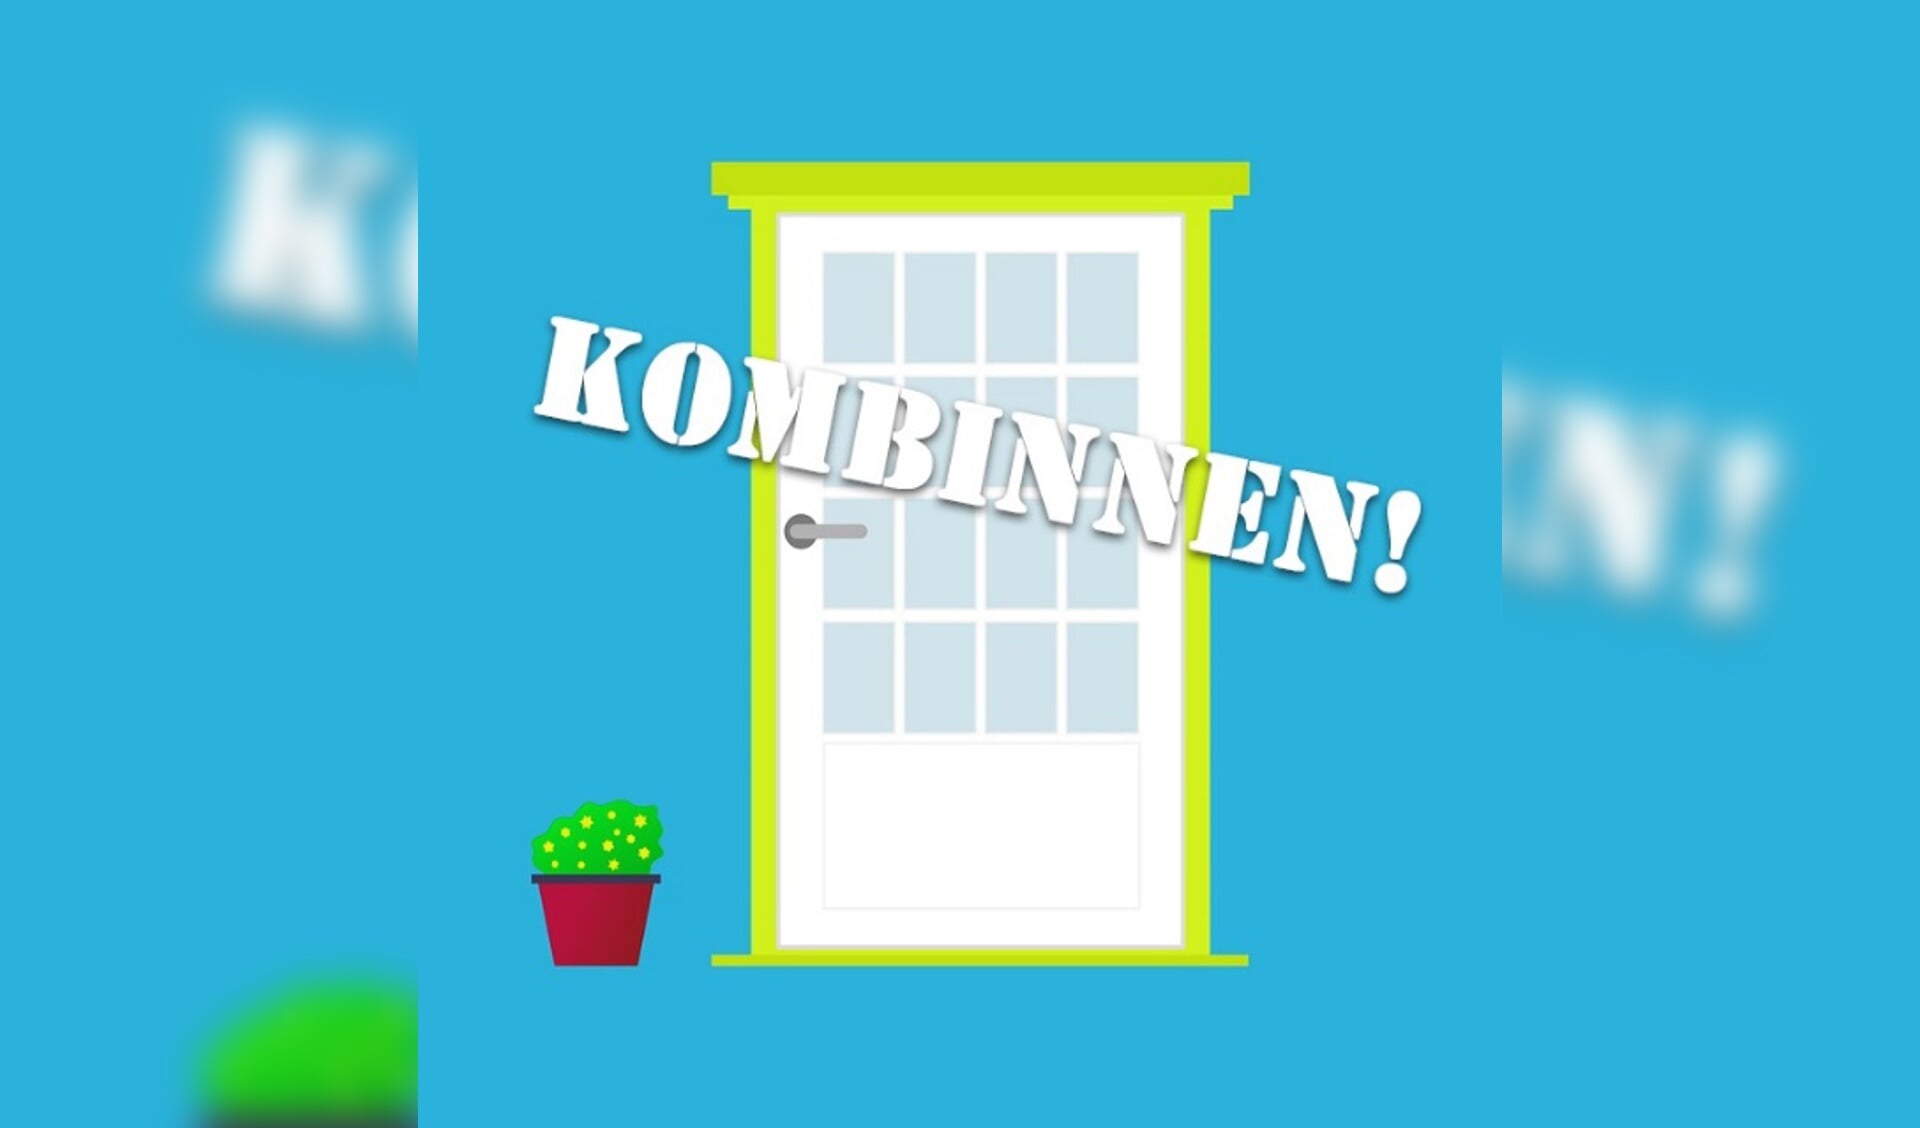 He logo van Kombinnen!